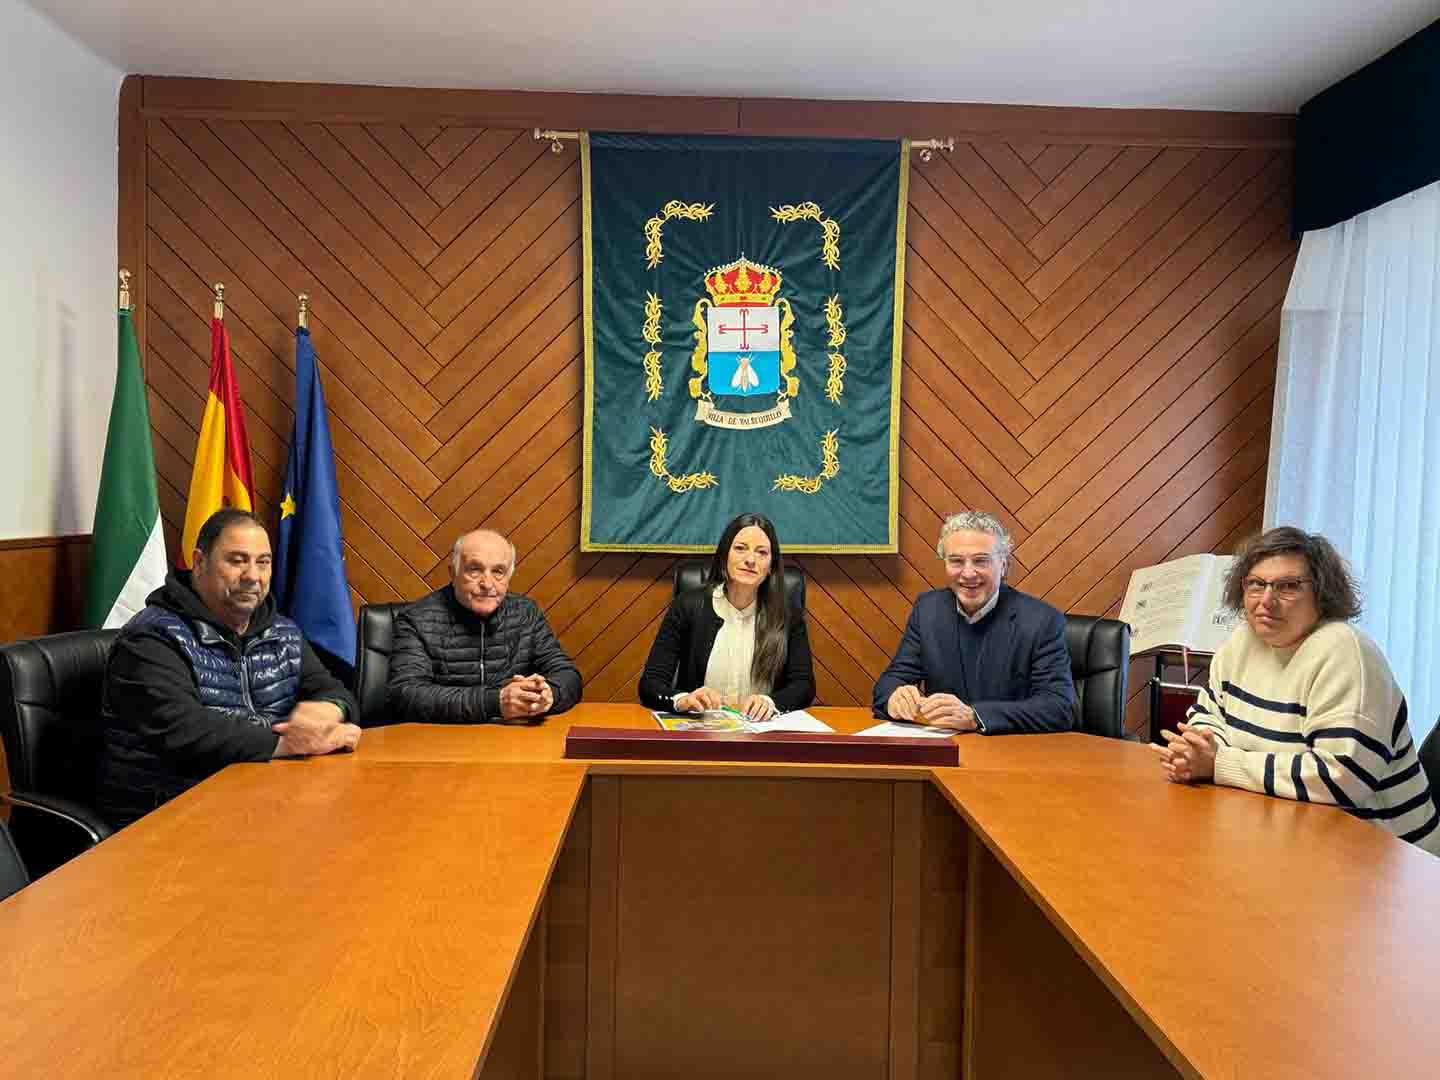 Fundación PRODE y el Ayuntamiento de Valsequillo firman el contrato del Servicio de ayuda a domicilio de la localidad